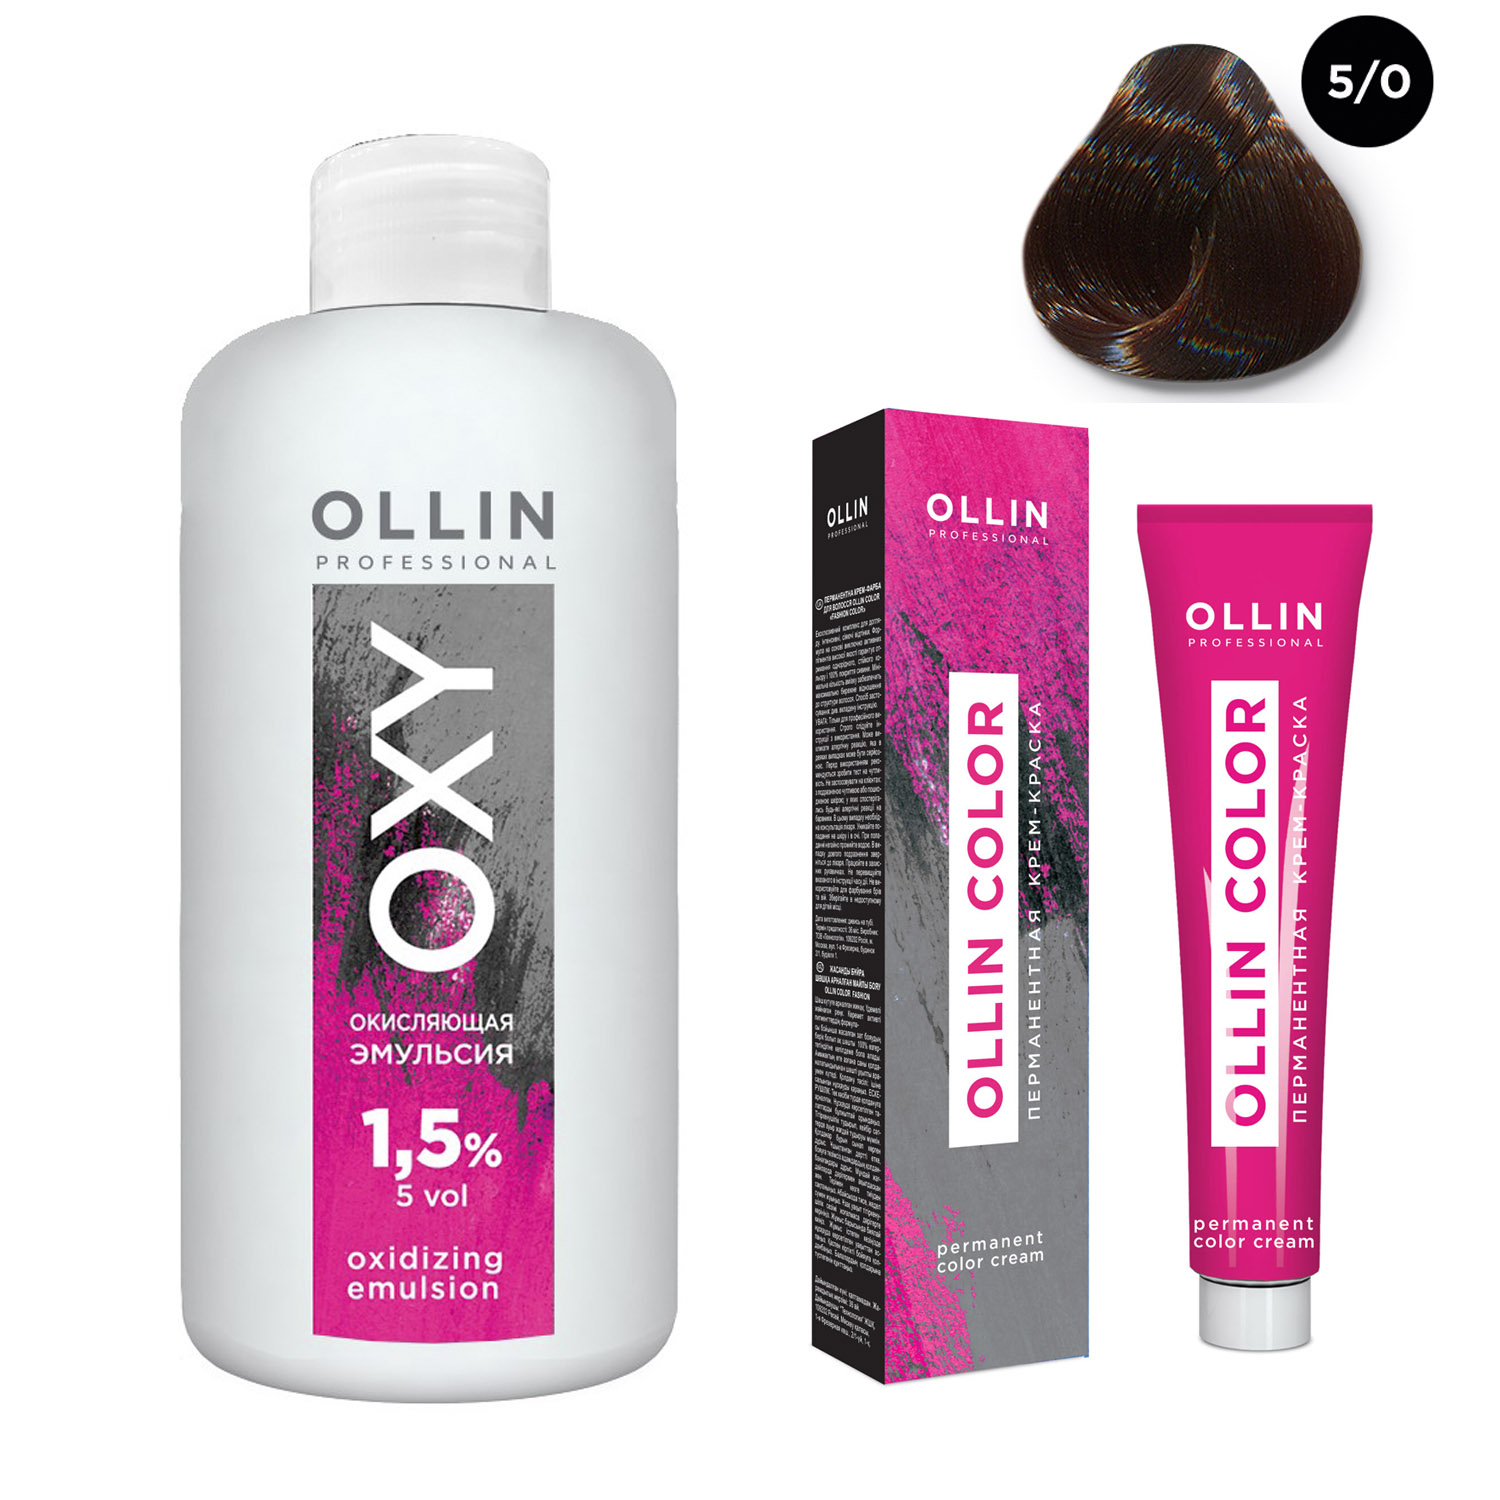 Ollin Professional Набор Перманентная крем-краска для волос Ollin Color оттенок 5/0 светлый шатен 100 мл + Окисляющая эмульсия Oxy 1,5% 150 мл (Ollin Professional, Ollin Color)